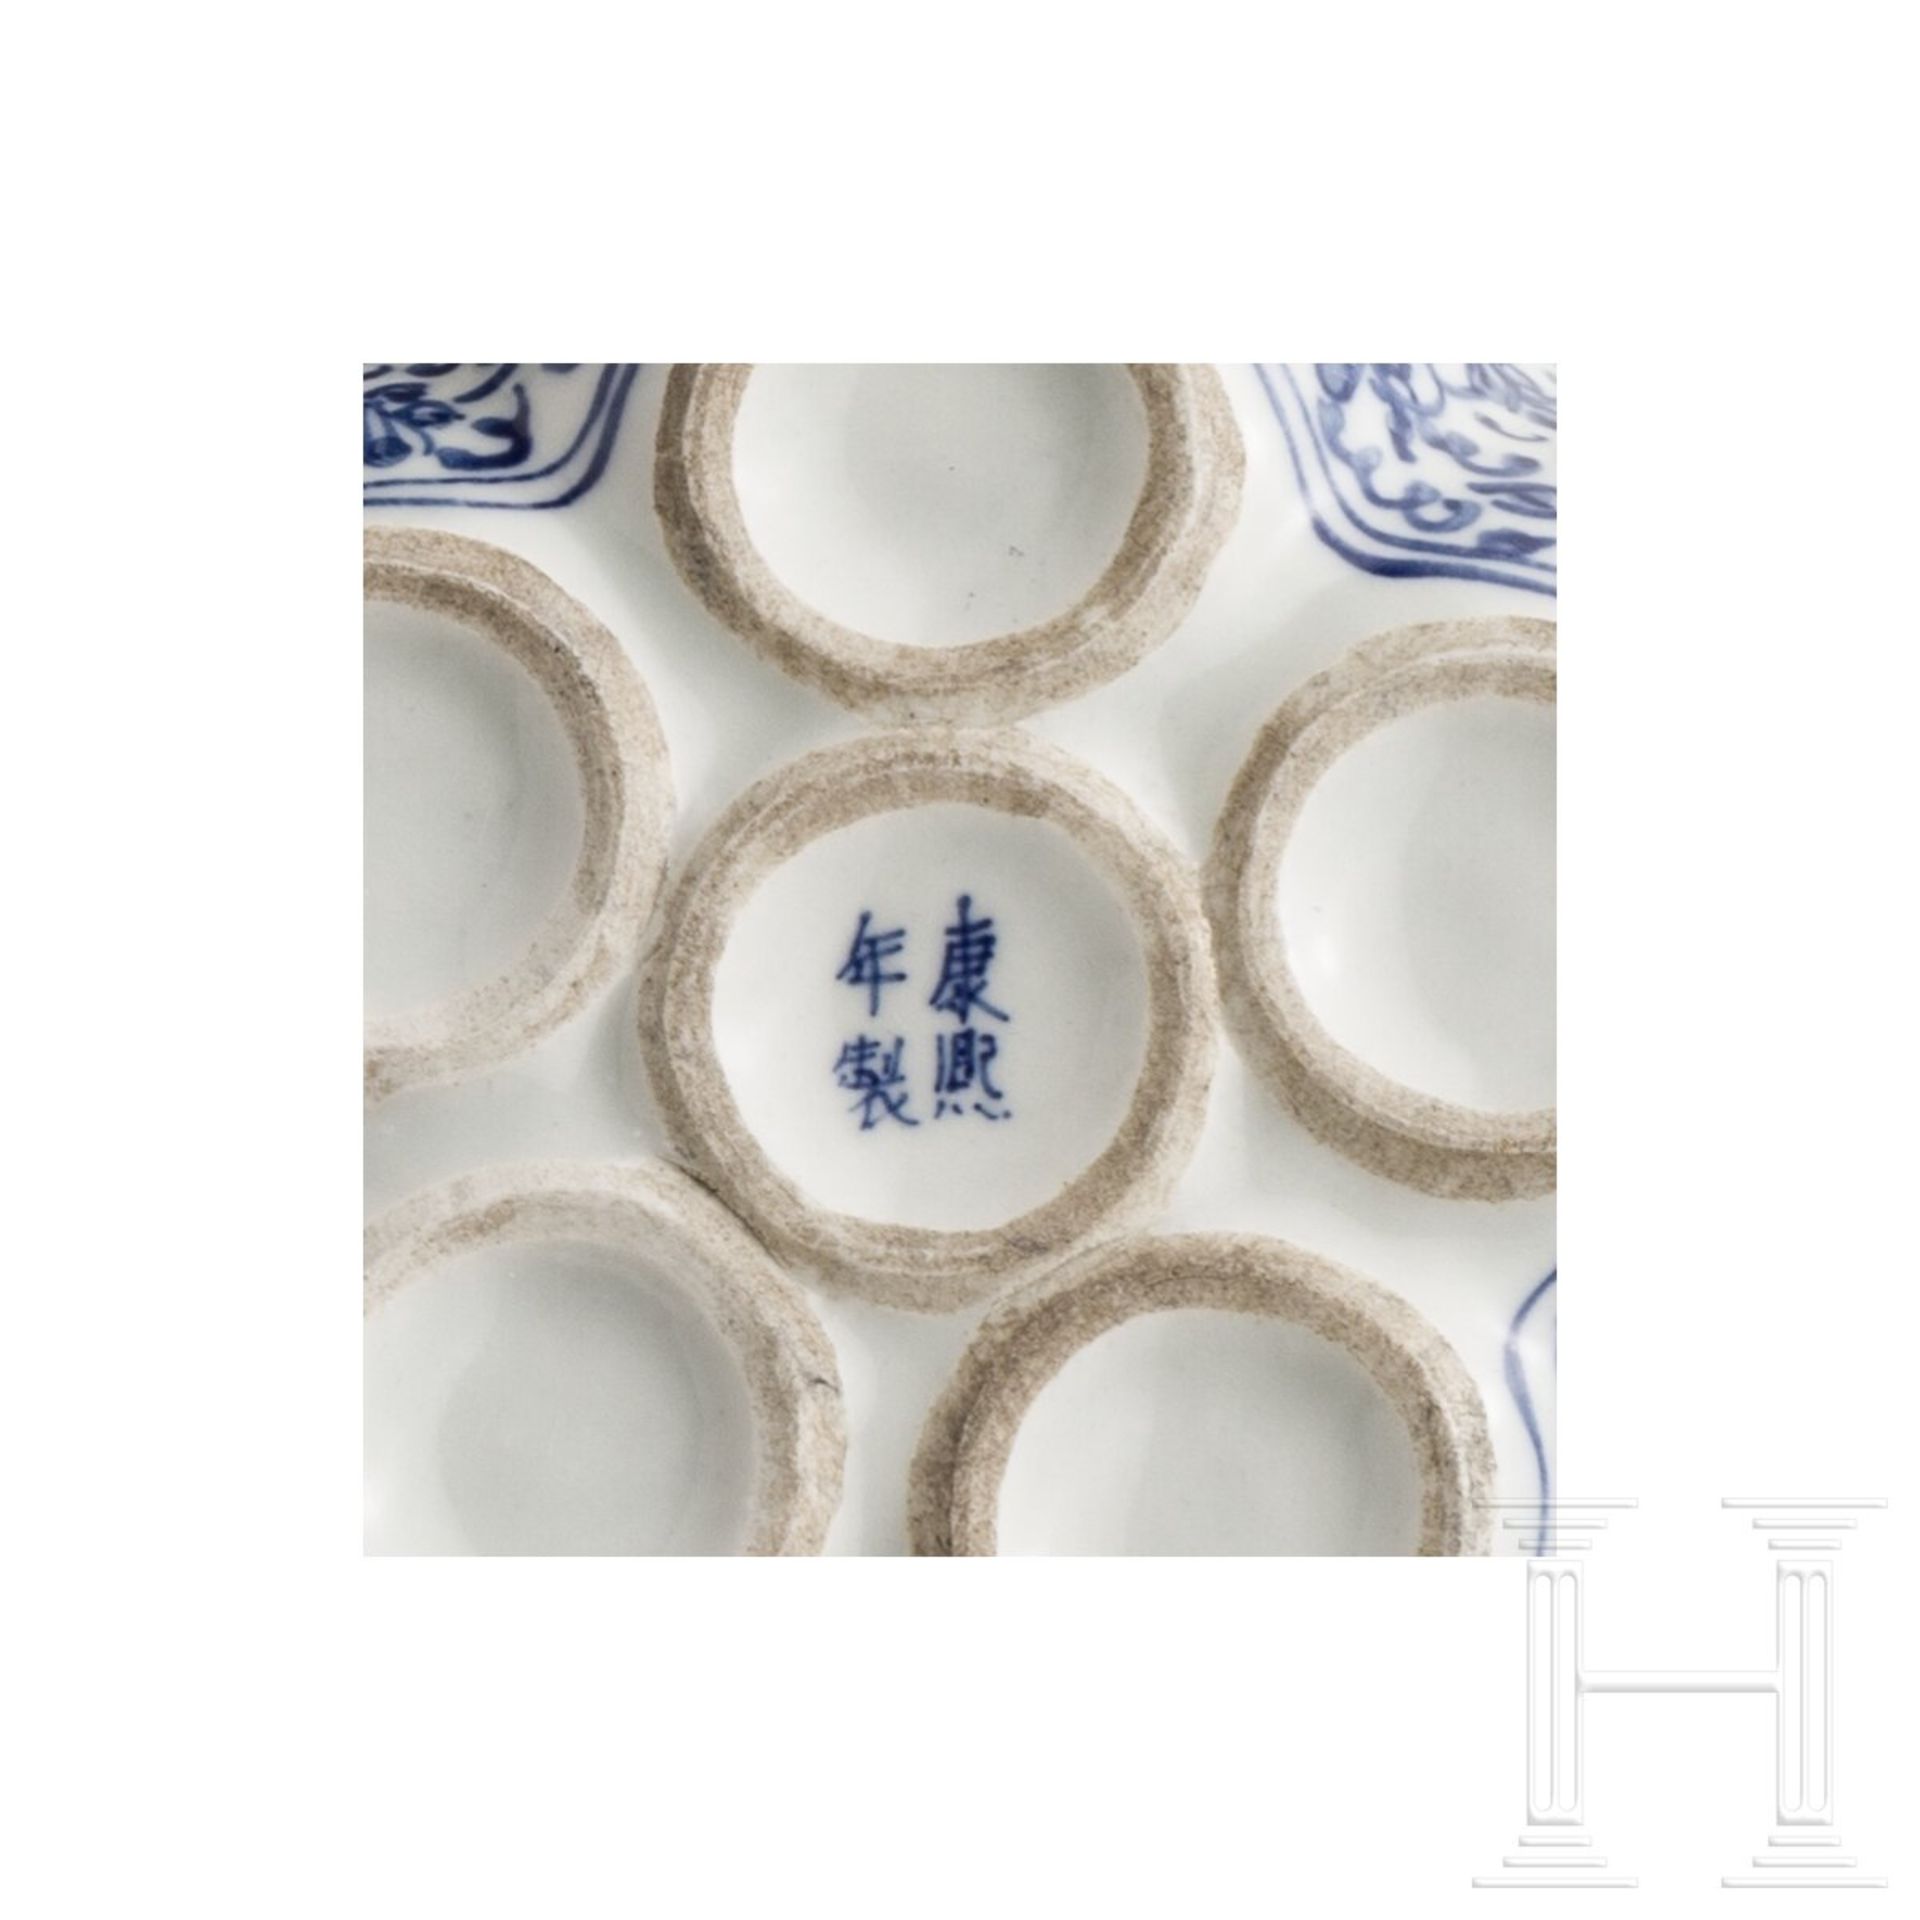 Ein Paar blau-weiße Tulpenvasen mit Drachendekor, China, 19. Jhdt. - Image 4 of 4